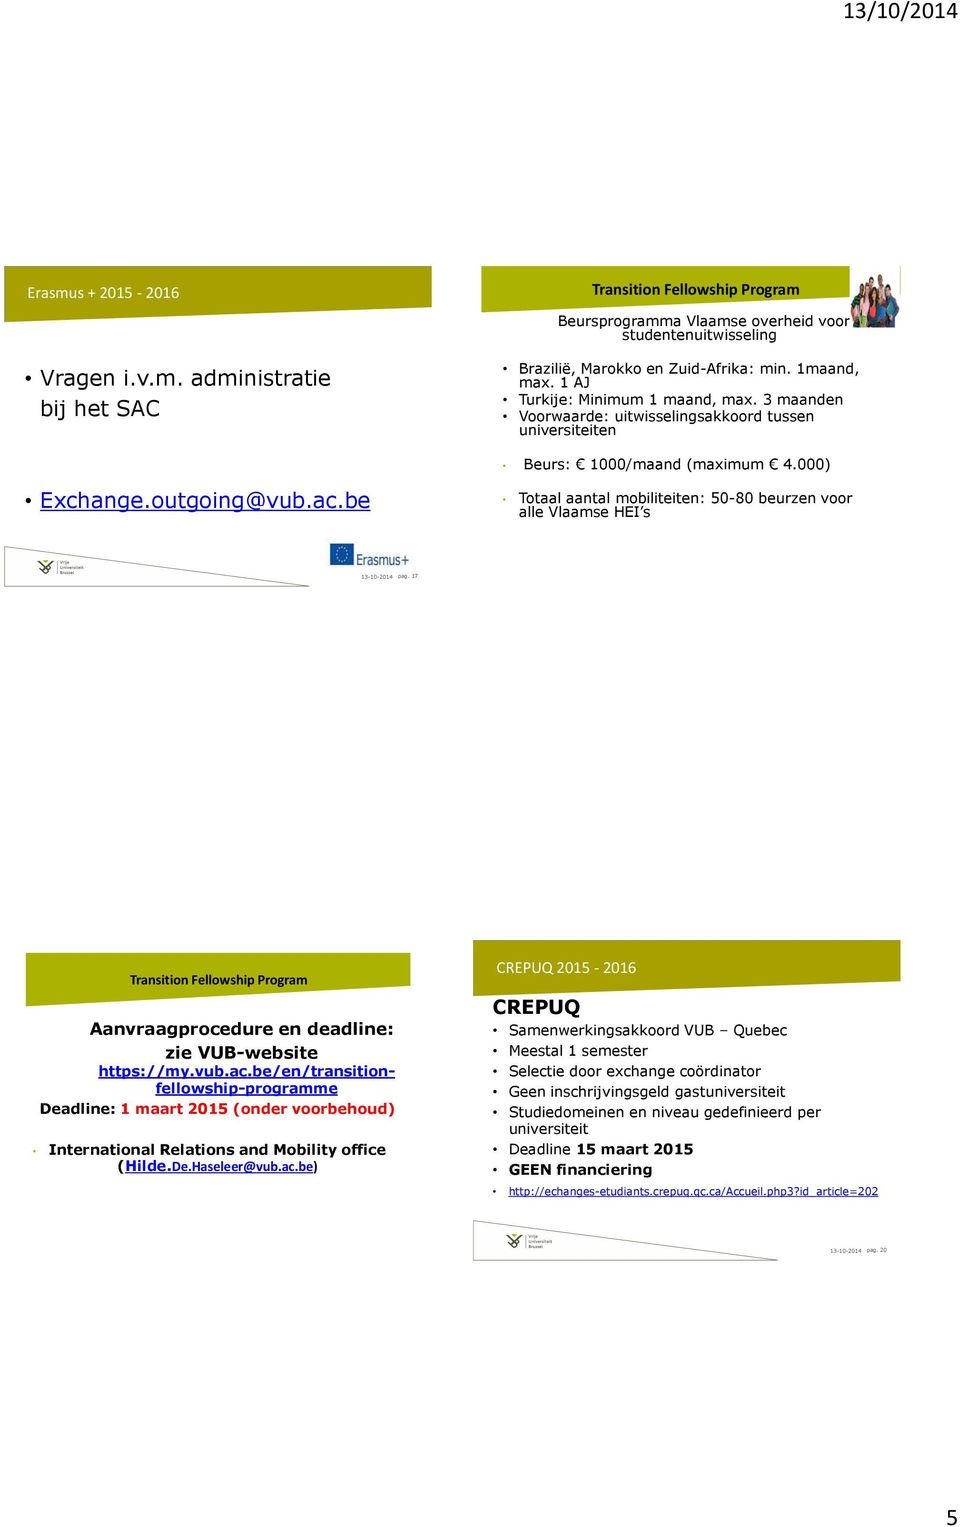 be Totaal aantal mobiliteiten: 50-80 beurzen voor alle Vlaamse HEI s 13-10-2014 pag. 17 Transition Fellowship Program Aanvraagprocedure en deadline: zie VUB-website https://my.vub.ac.